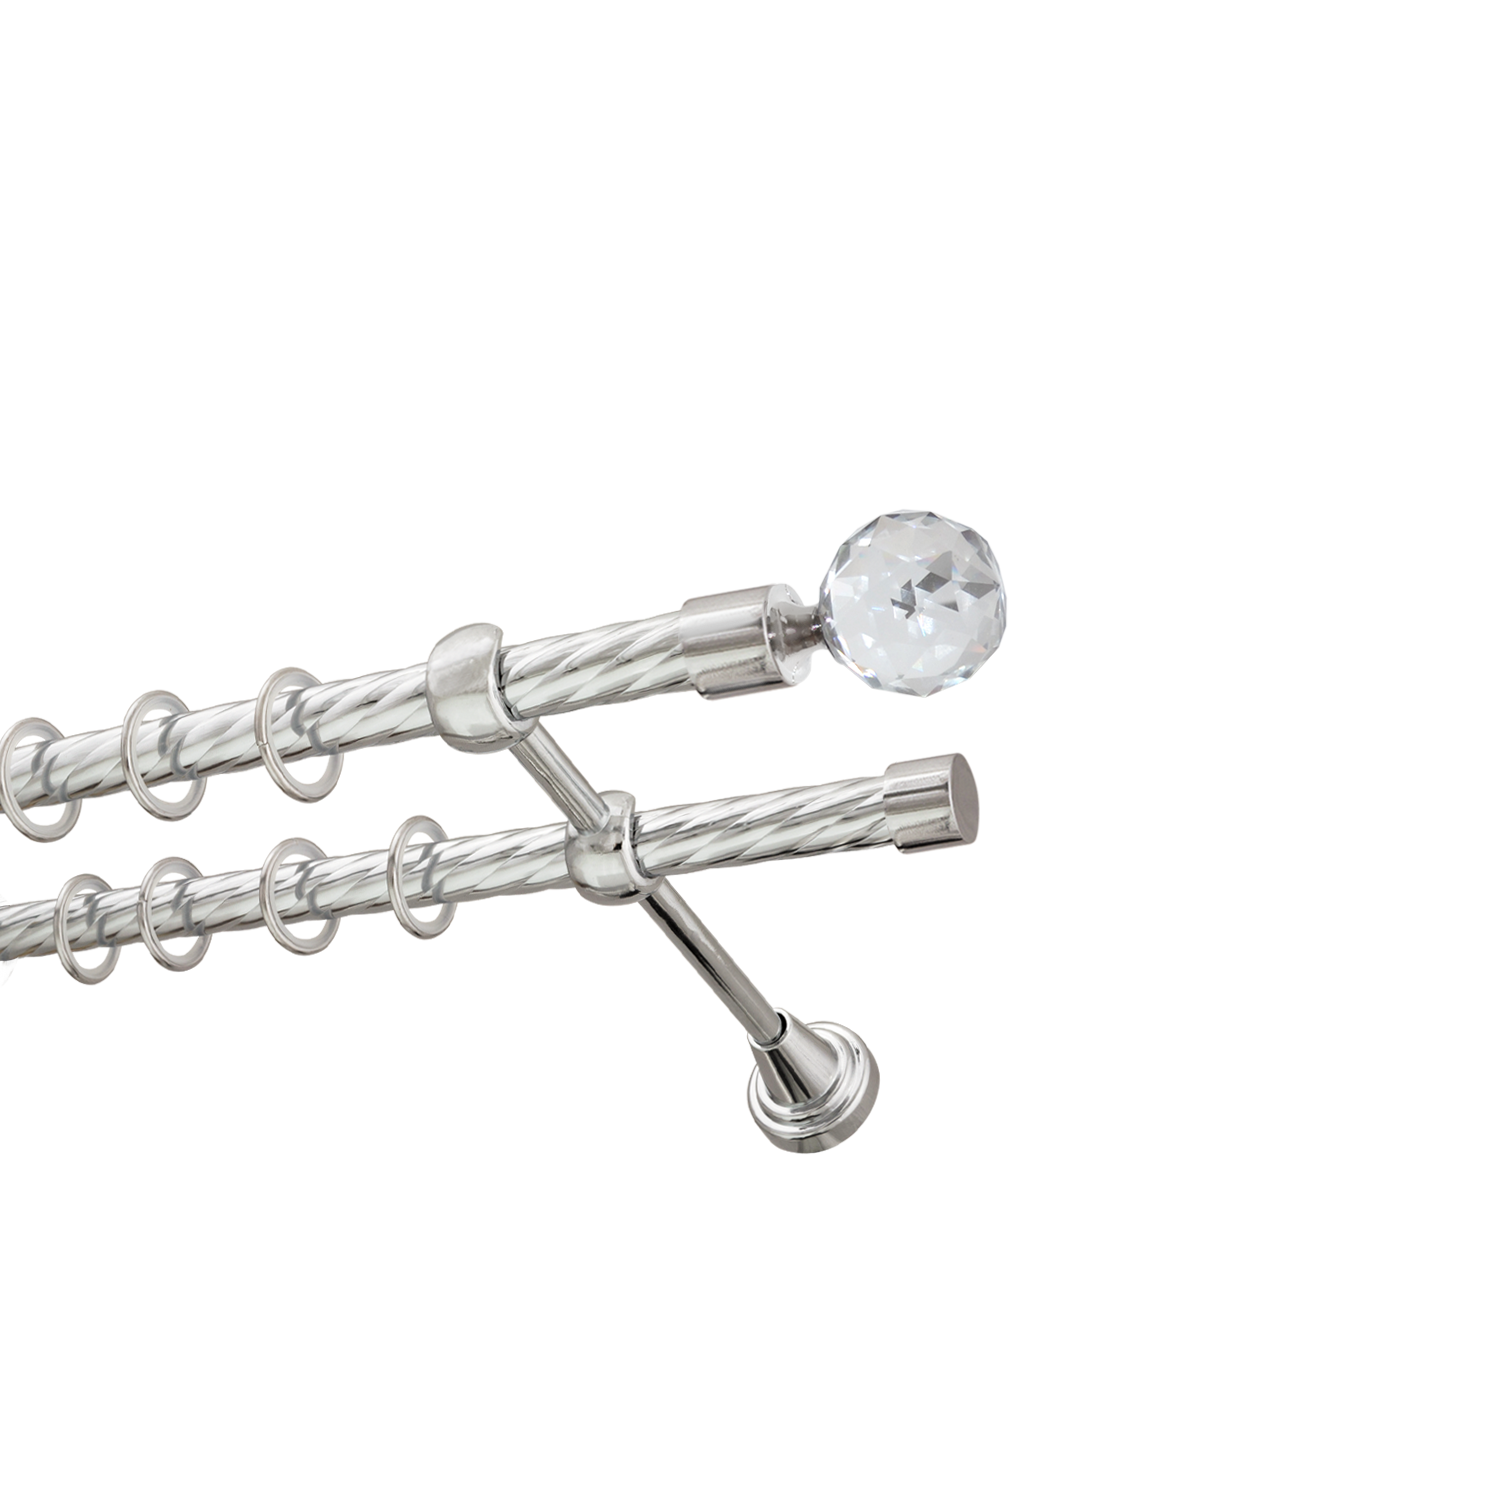 Металлический карниз для штор Карат, двухрядный 16/16 мм, серебро, витая штанга, длина 180 см